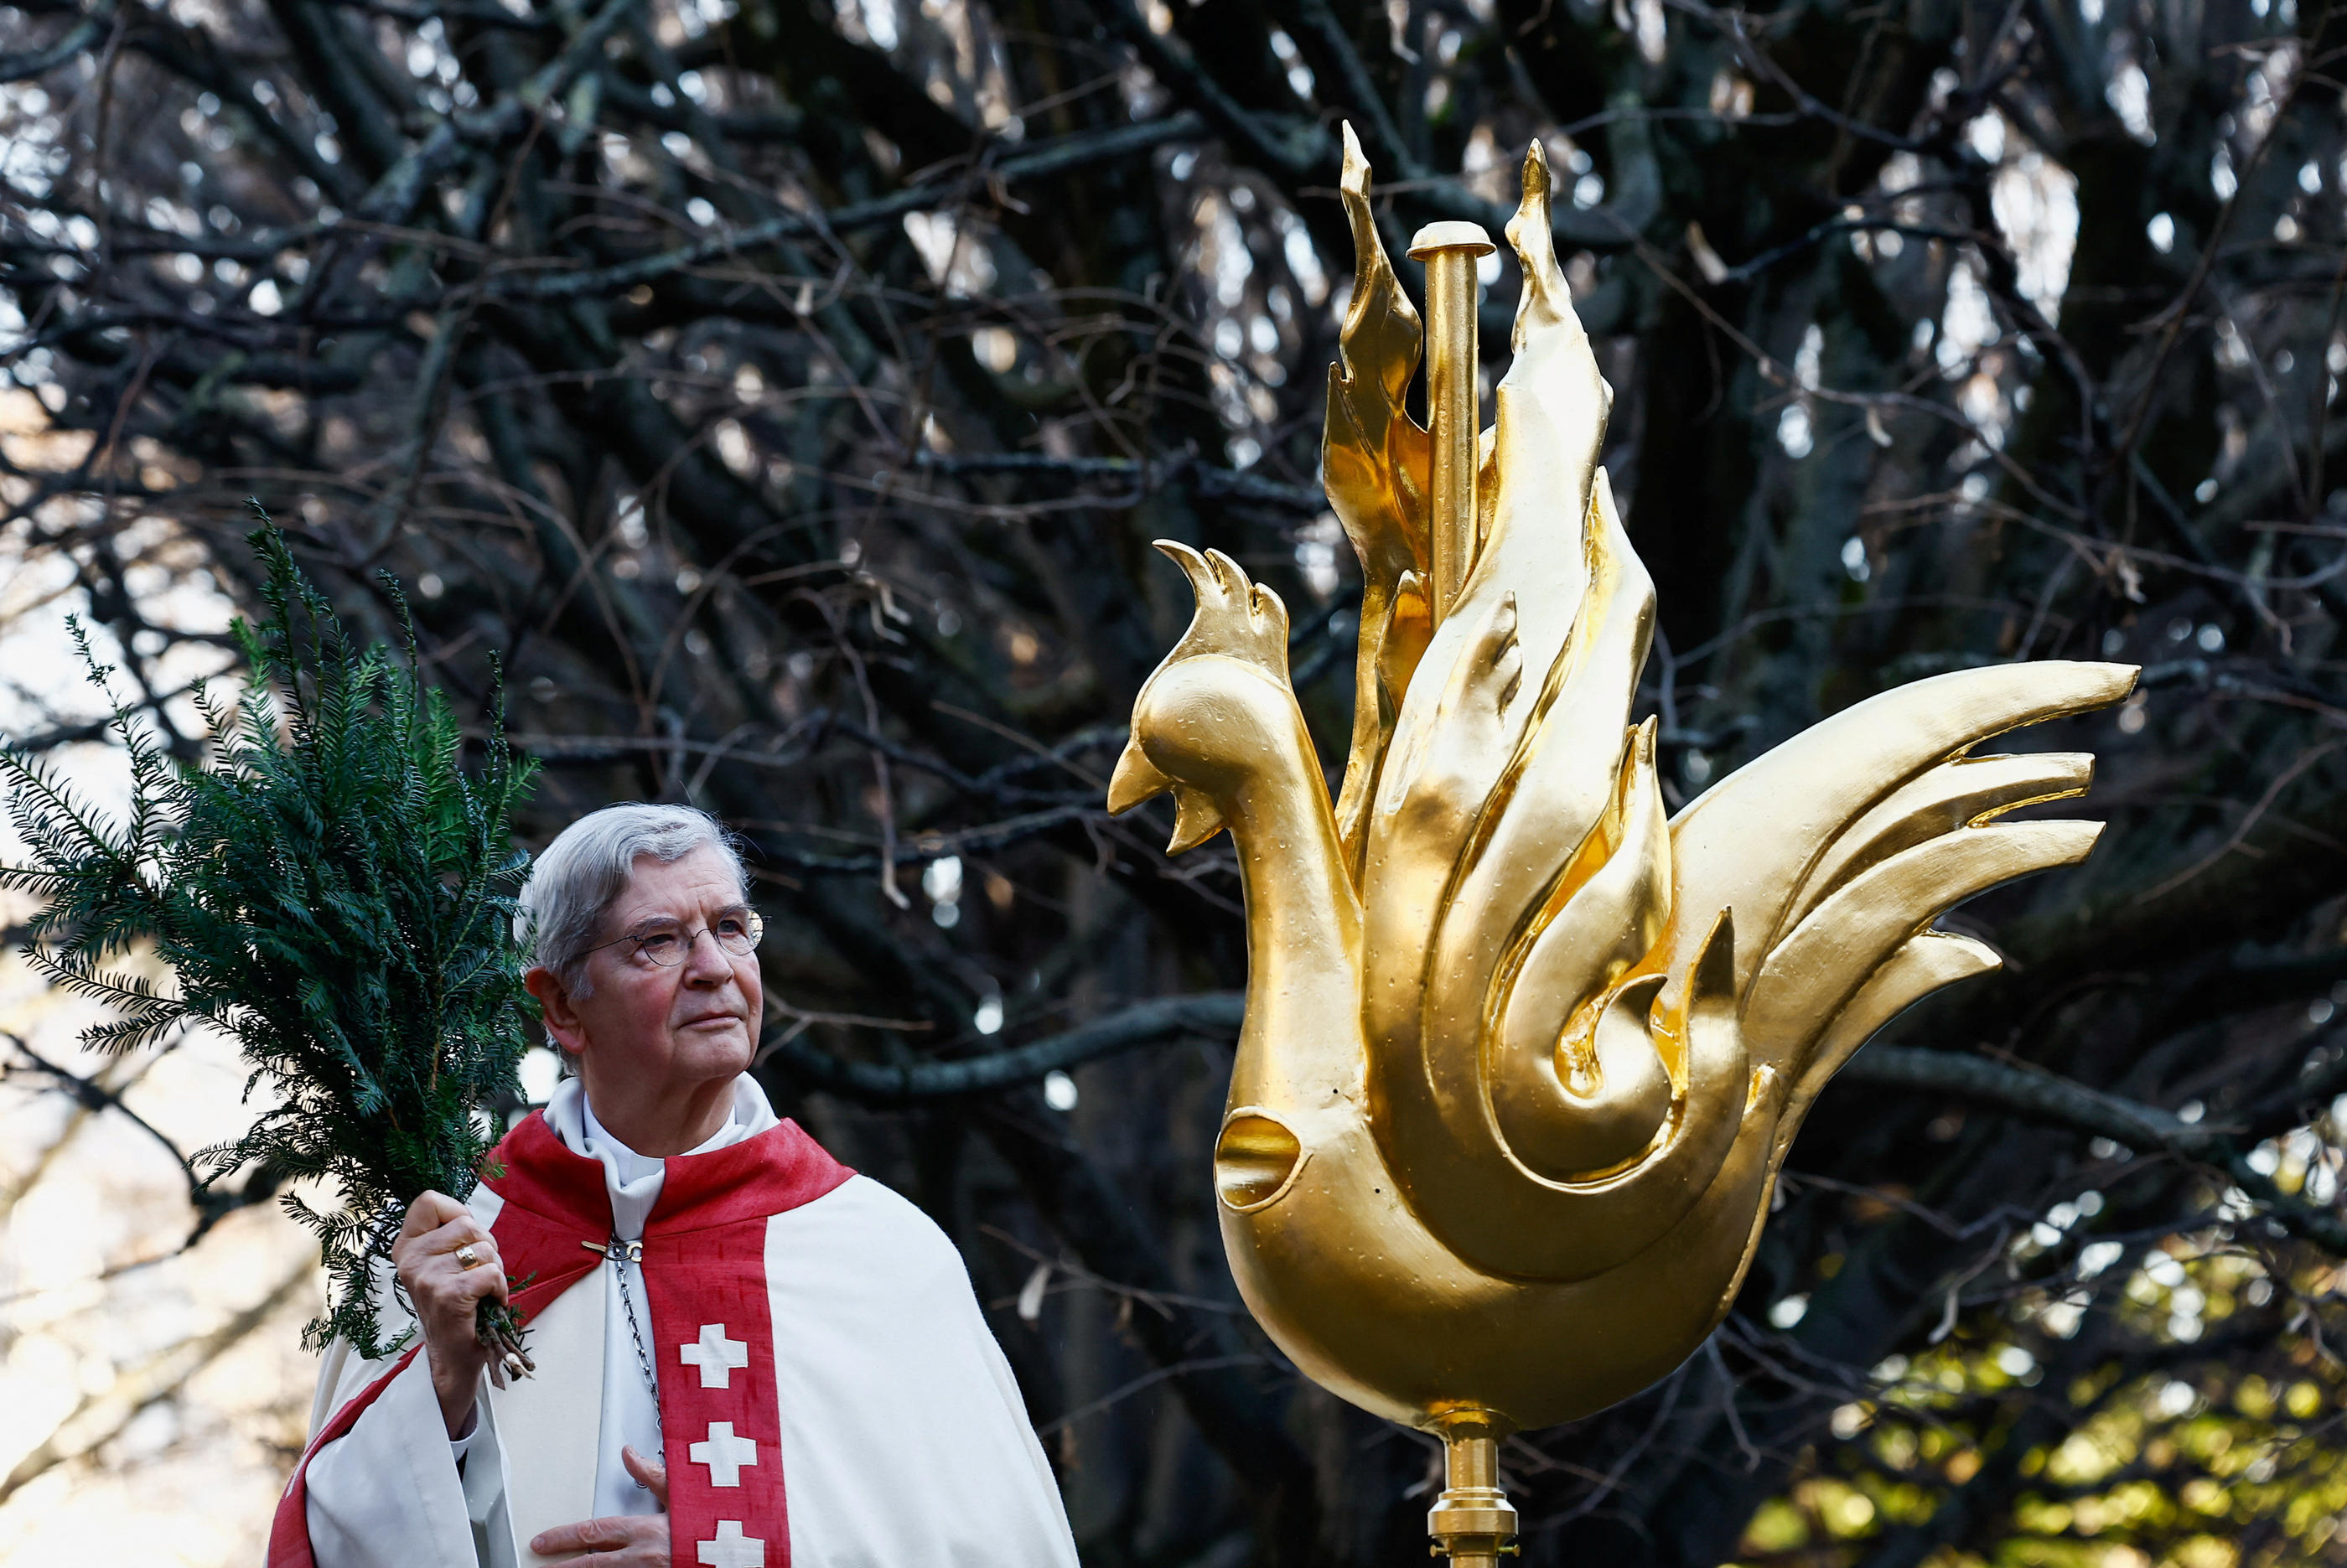 L'archevêque de Paris monseigneur Laurent Ulrich a béni le coq ce samedi avant son installation au sommet de la cathédrale. REUTERS/Christian Hartmann